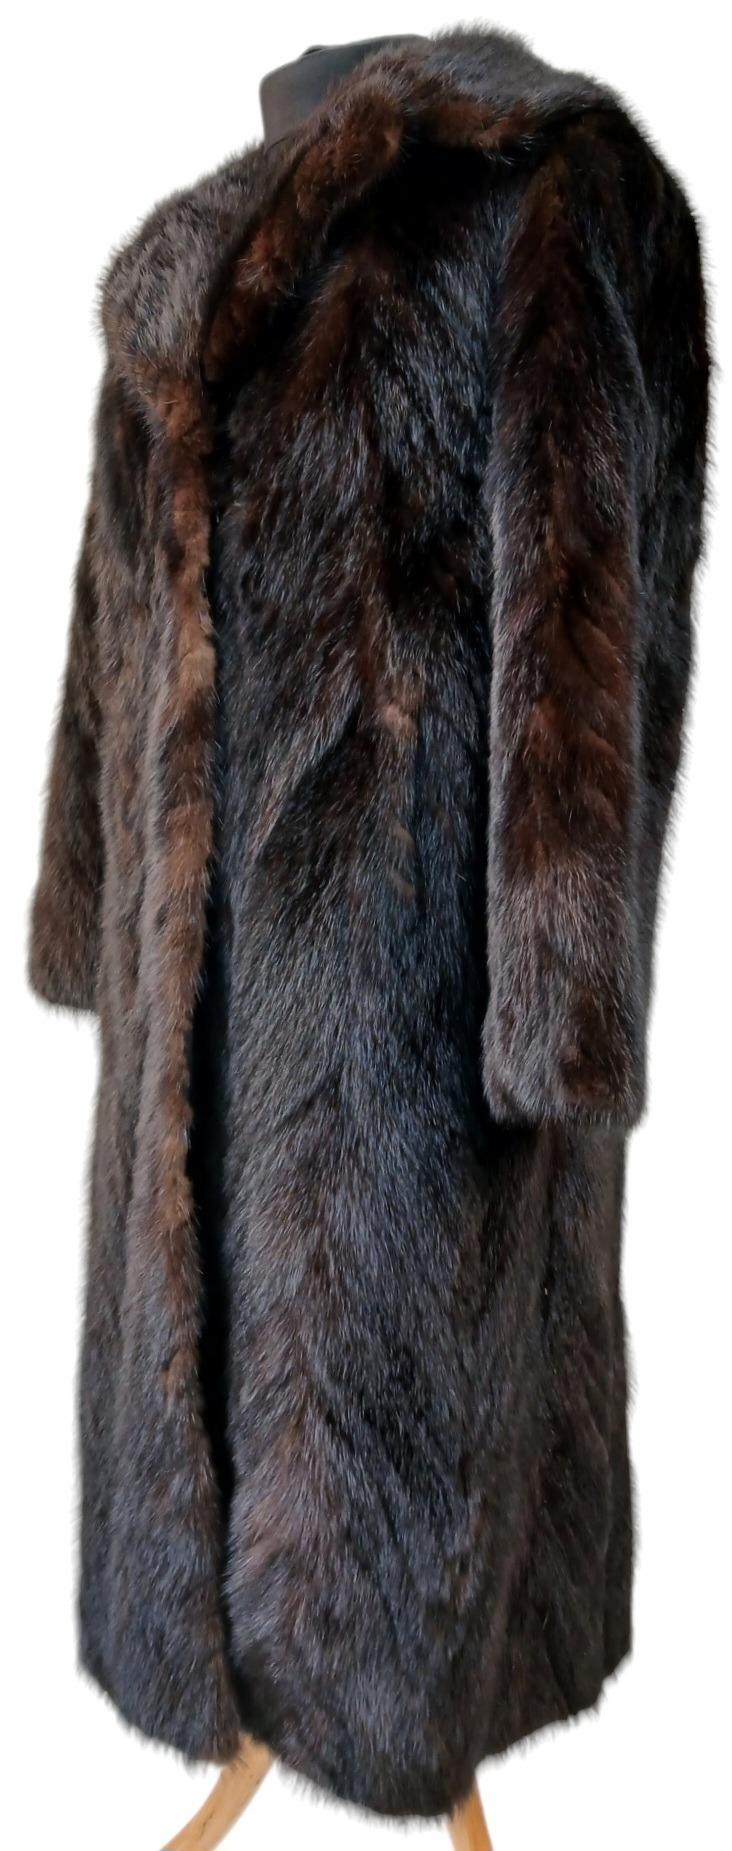 A Vintage Full Length Fur Coat - Possibly Mink/Sable. - Image 2 of 7